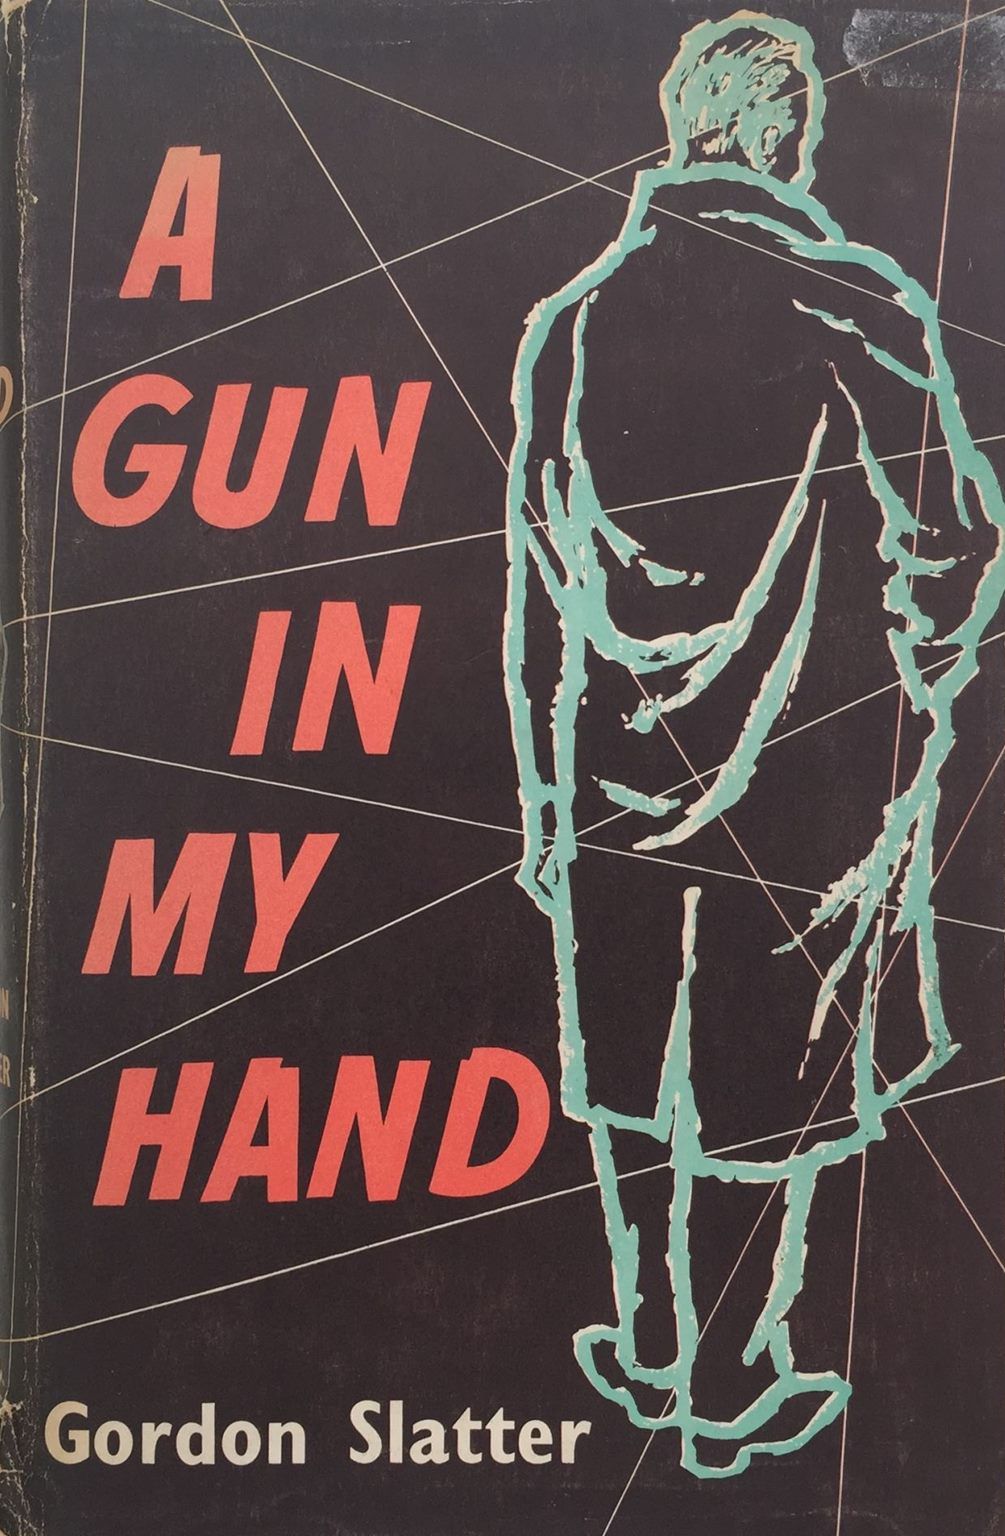 A GUN IN MY HAND